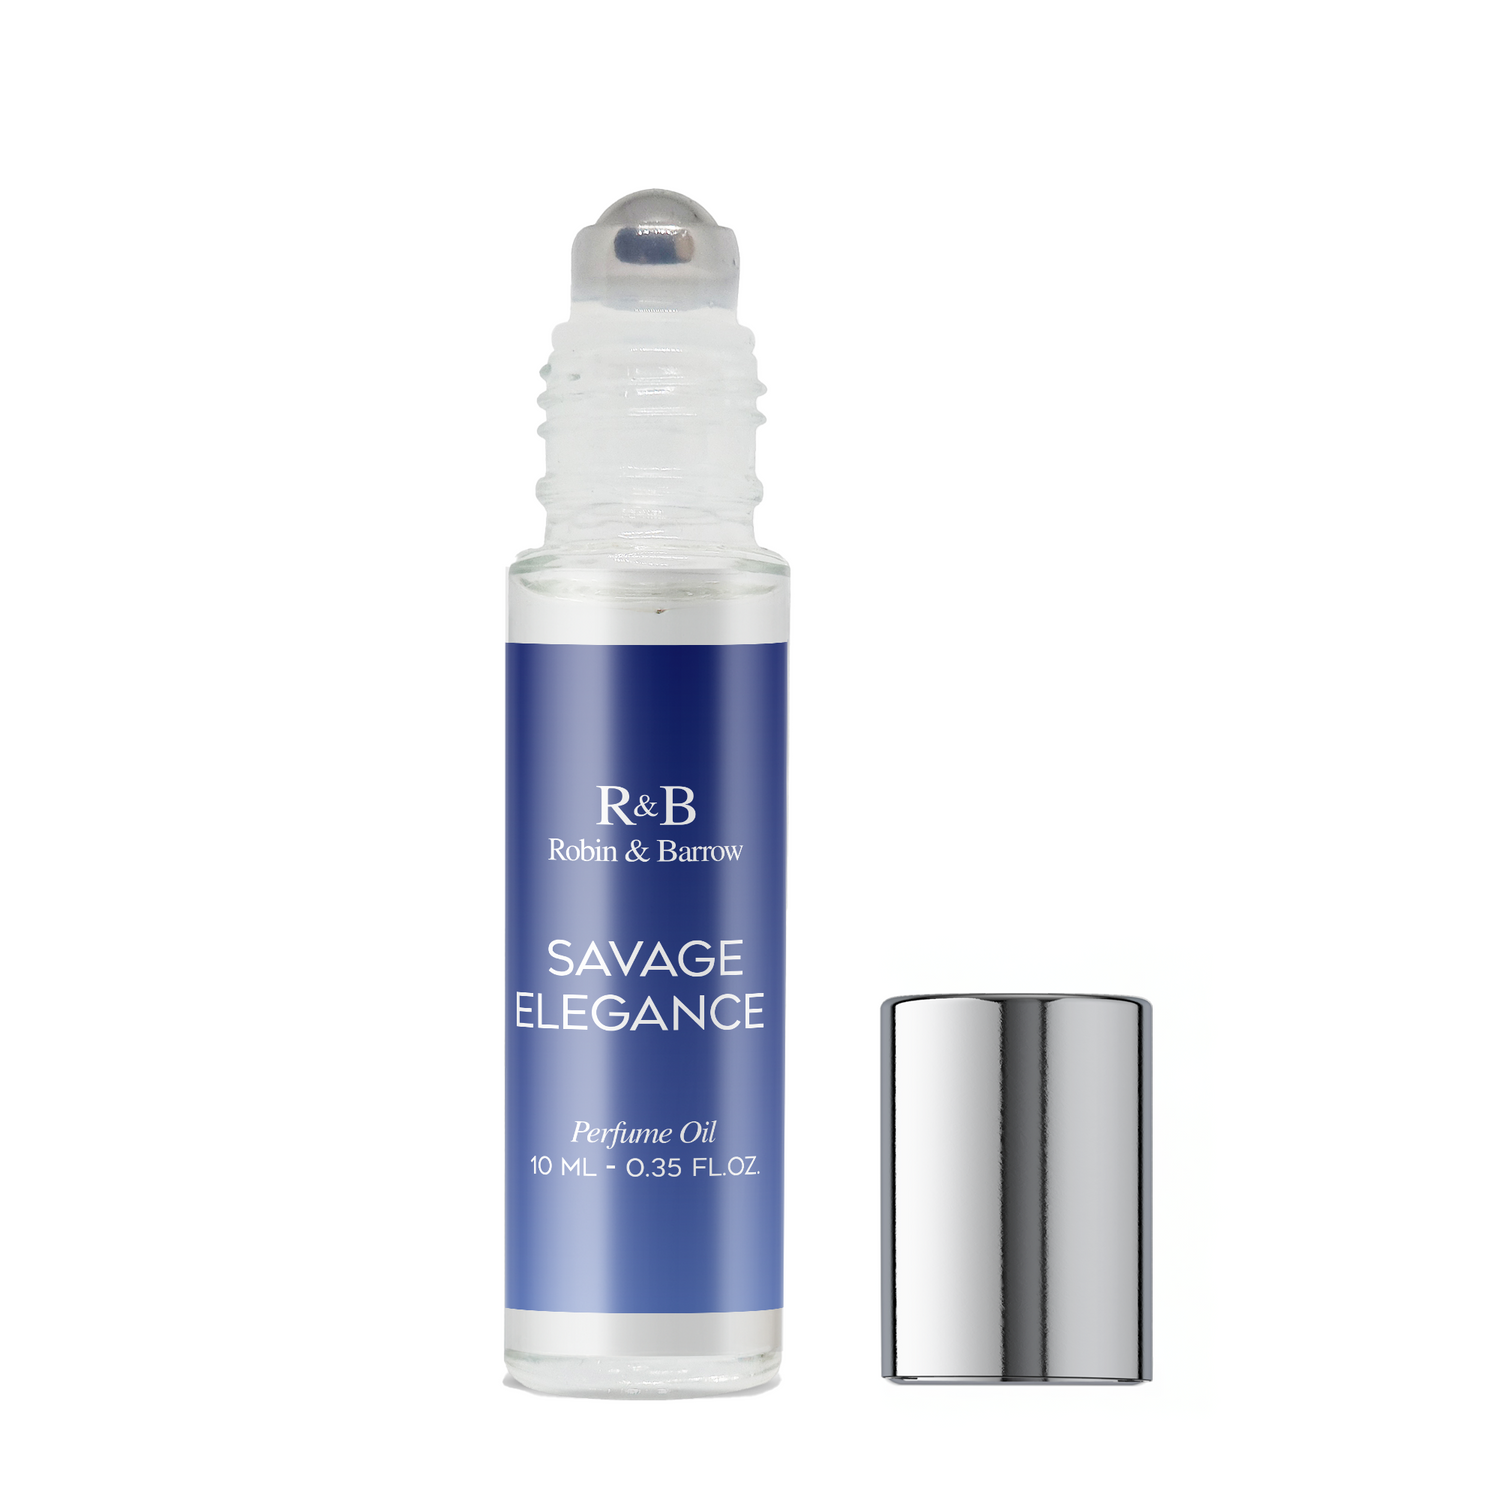 Savage Elegance - Perfume Oil